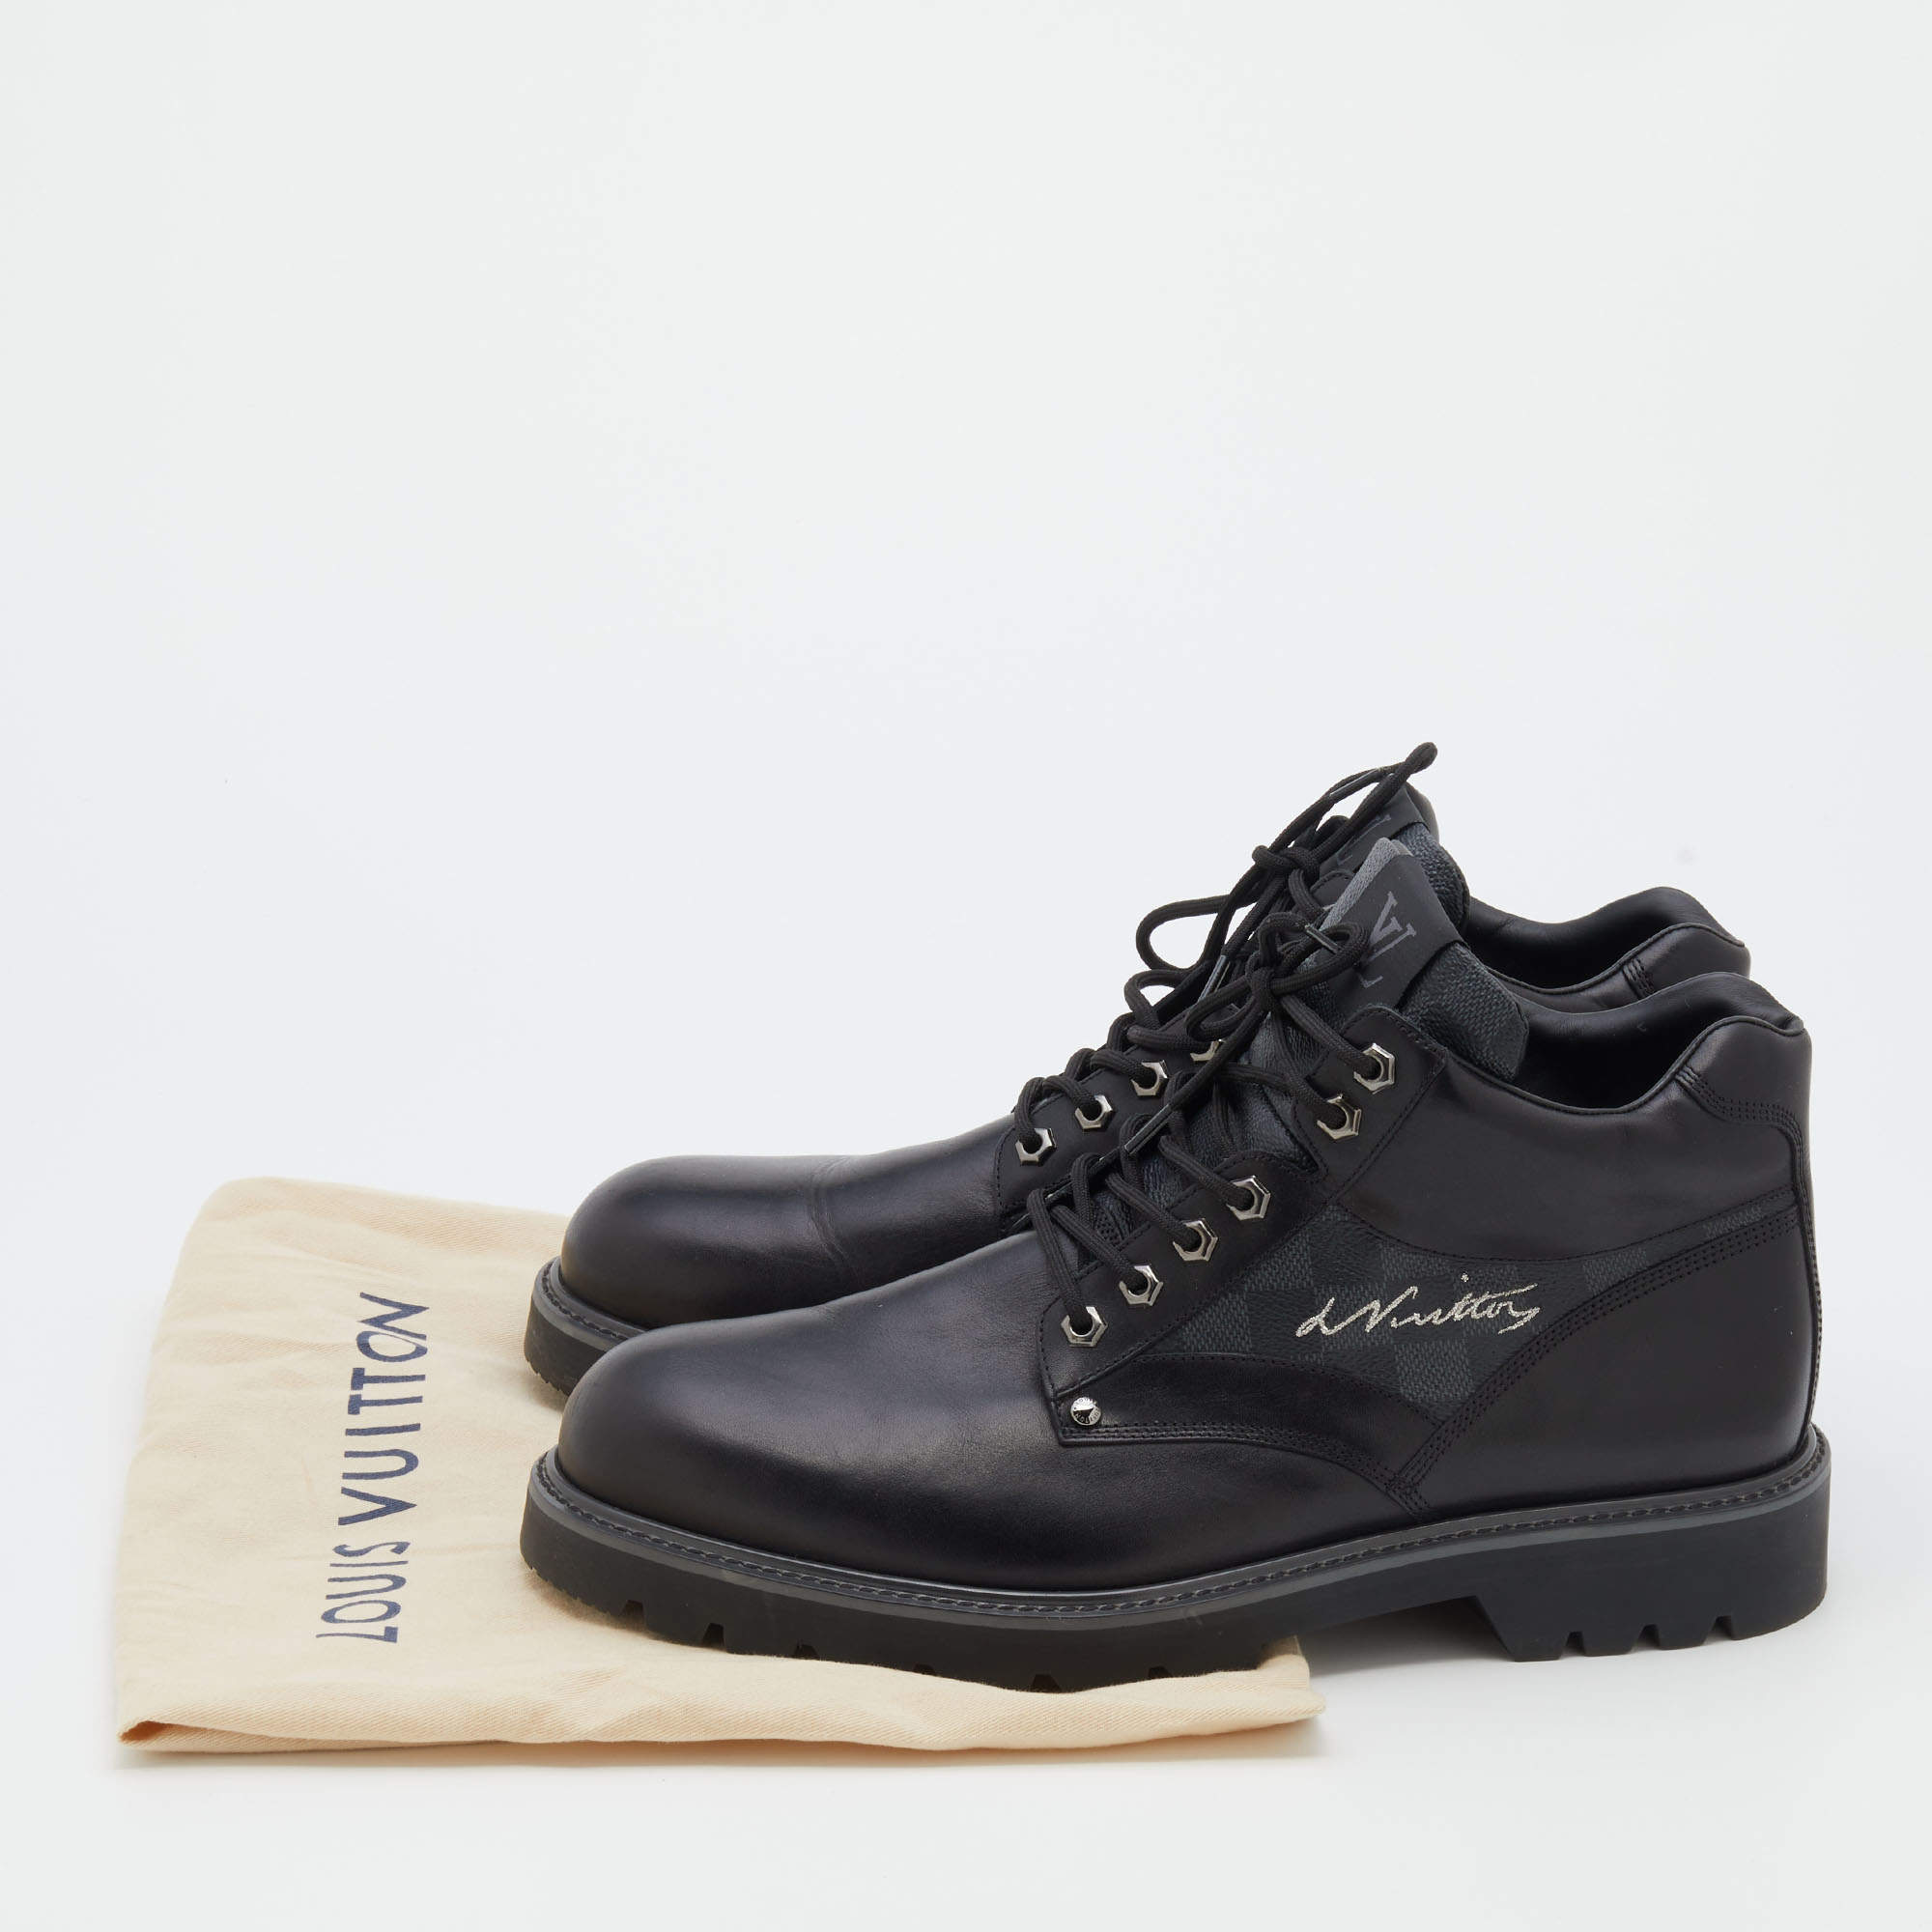 Louis Vuitton Black Leather And Damier Ebene Canvas Oberkampf Ankle Length  Boots Size 45 Louis Vuitton